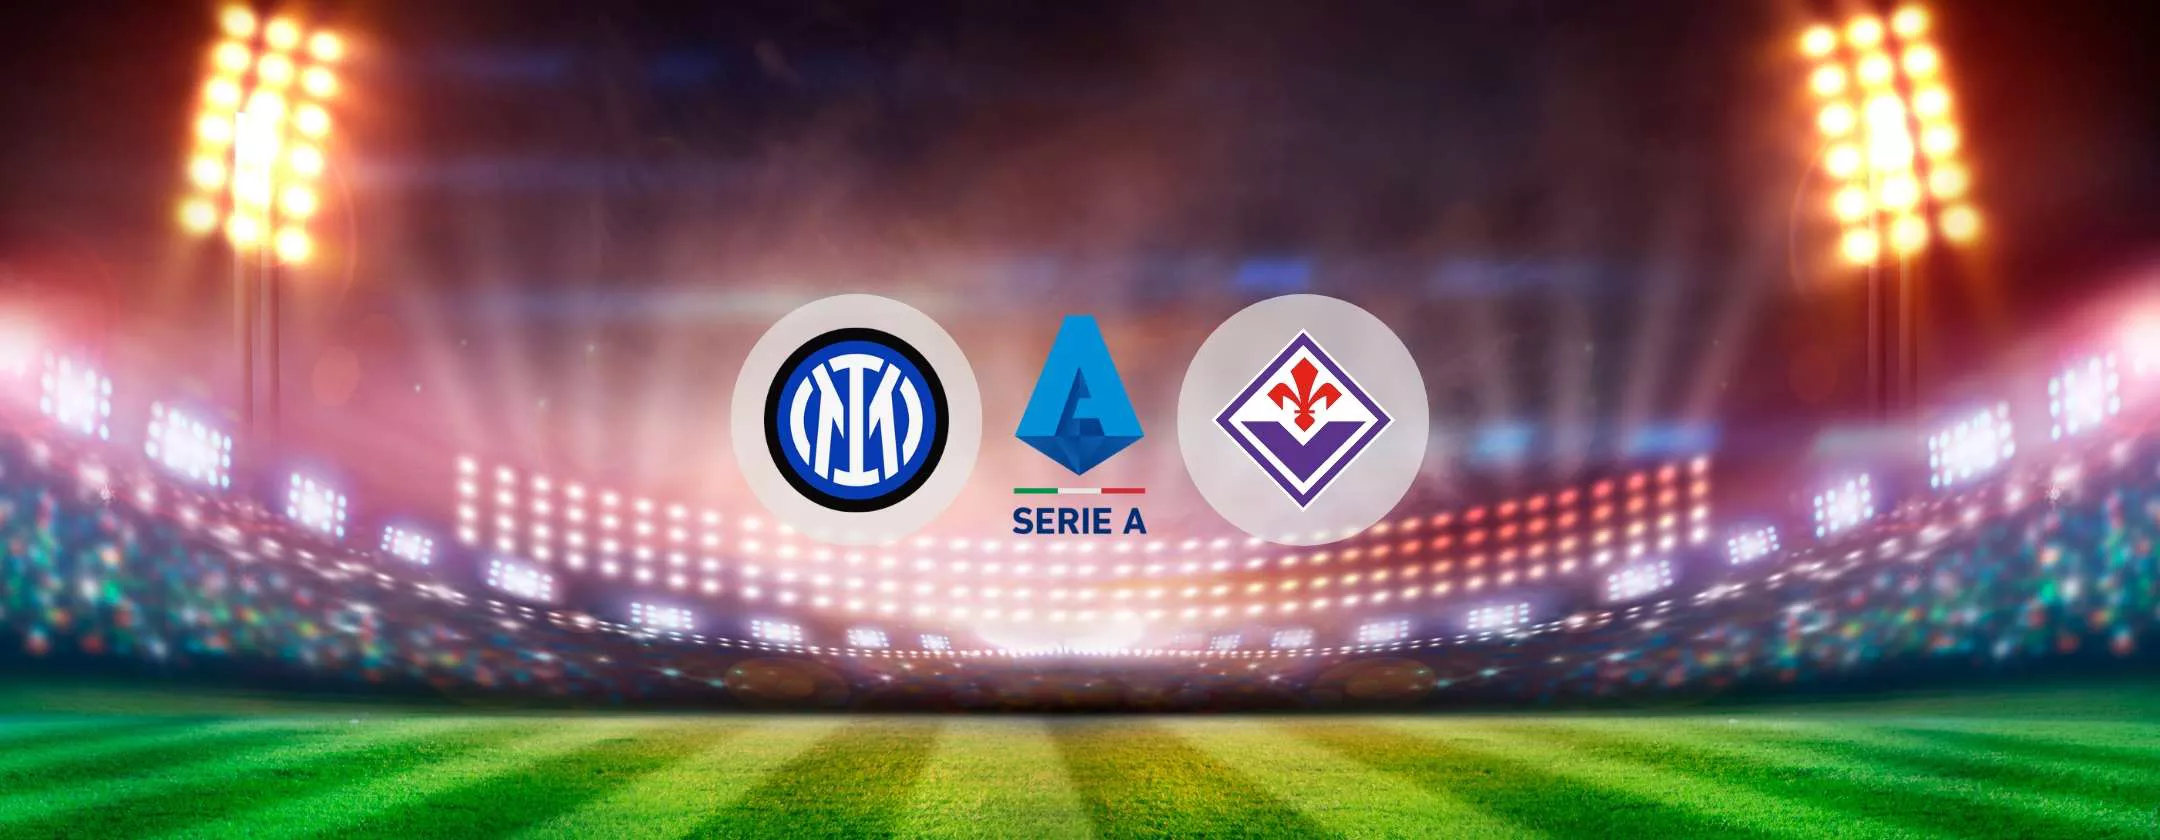 Inter Fiorentina, dove vedere la partita in streaming e diretta tv